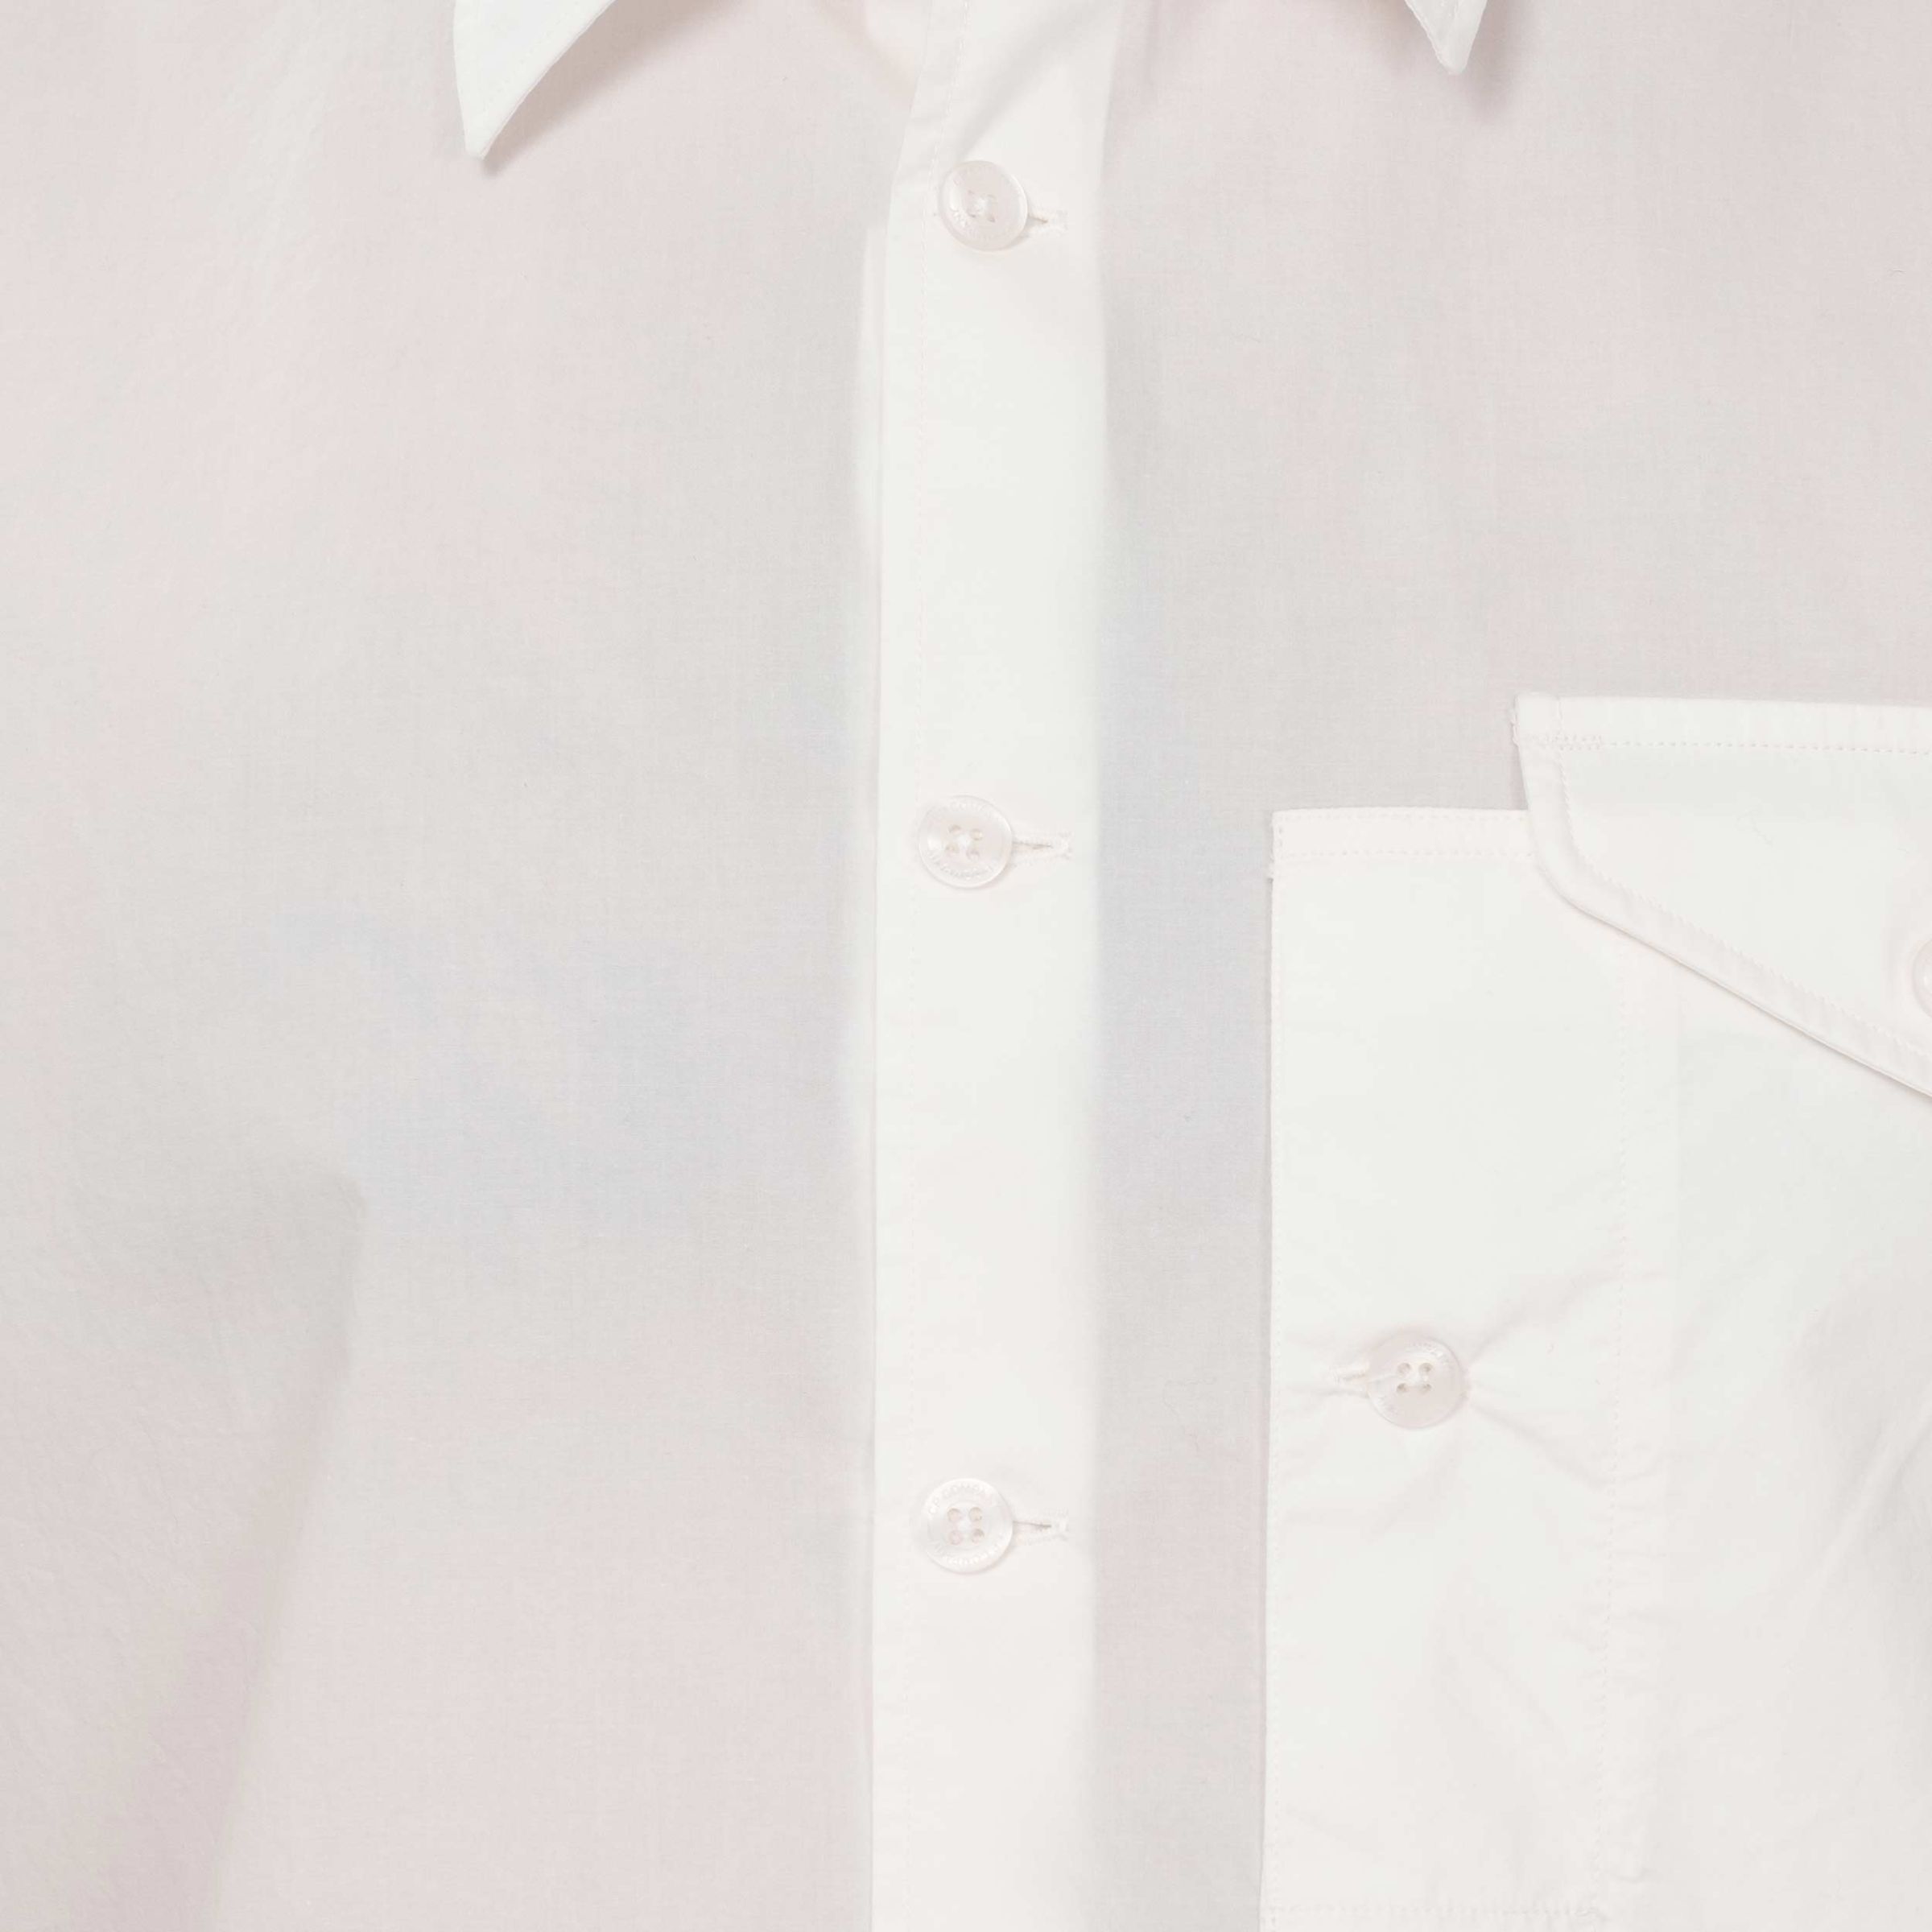 Рубашка C.P. Company белая